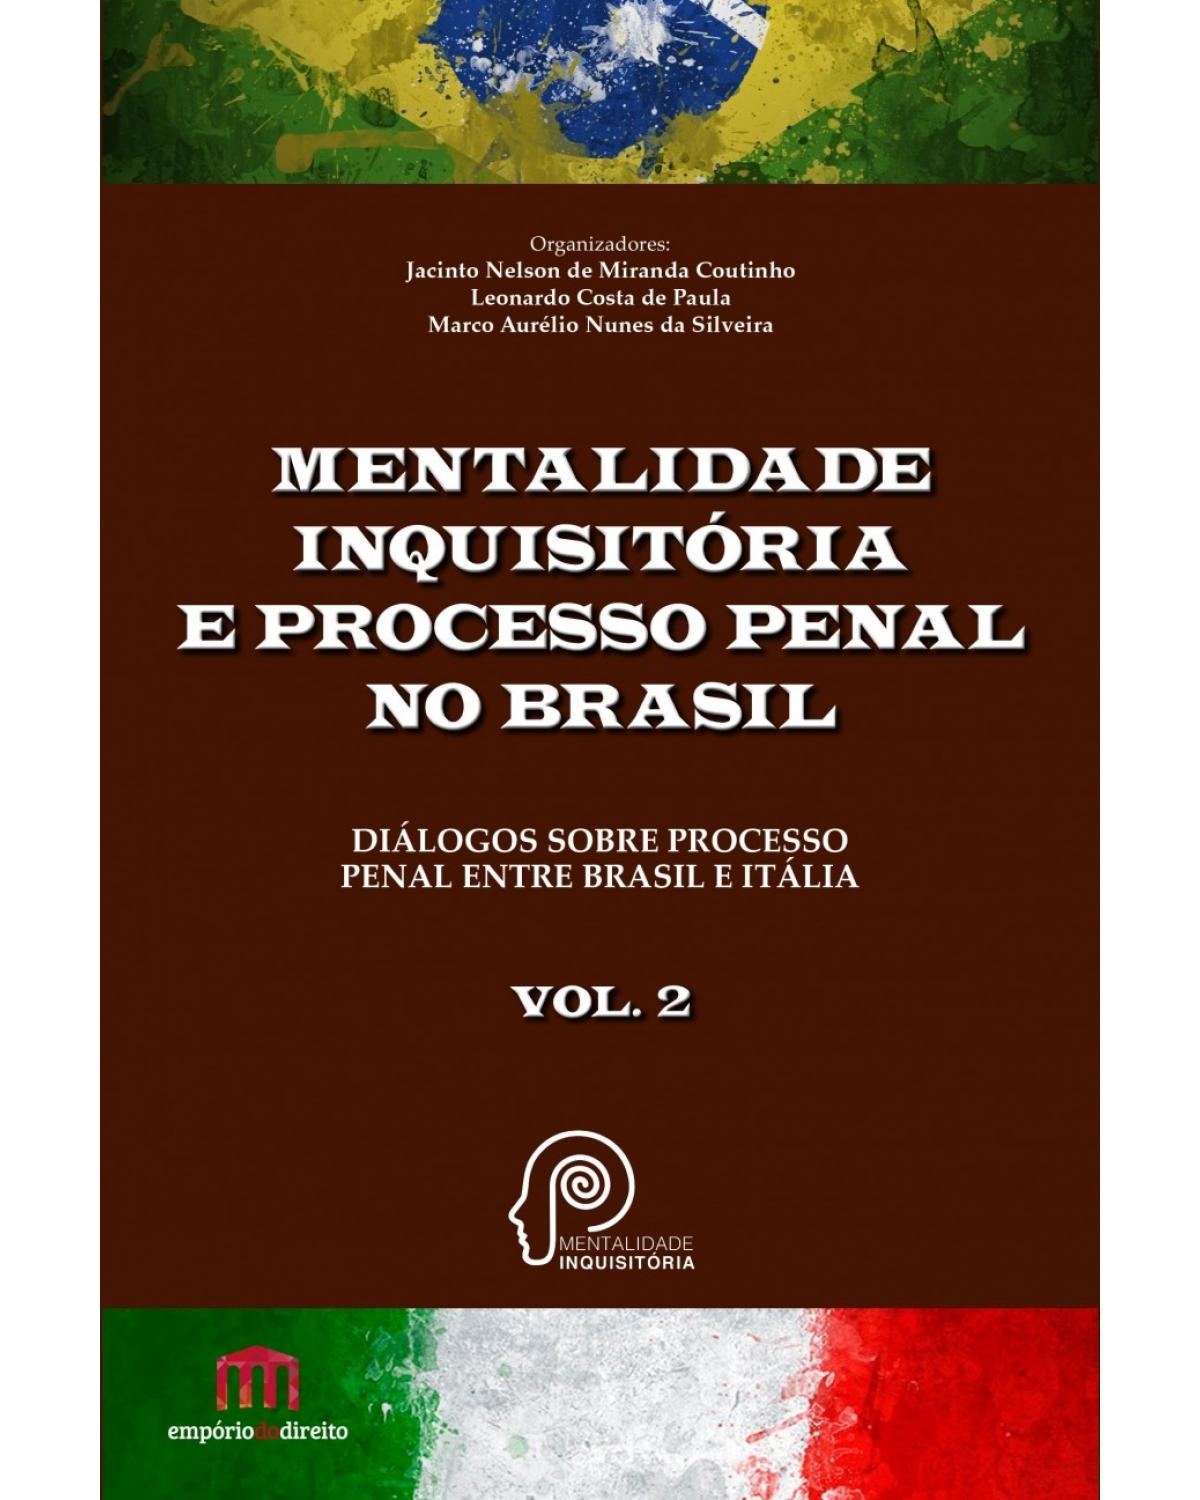 Mentalidade inquisitória e processo penal no Brasil - Volume 2: Diálogos sobre processo penal entre Brasil e Itália - 1ª Edição | 2017